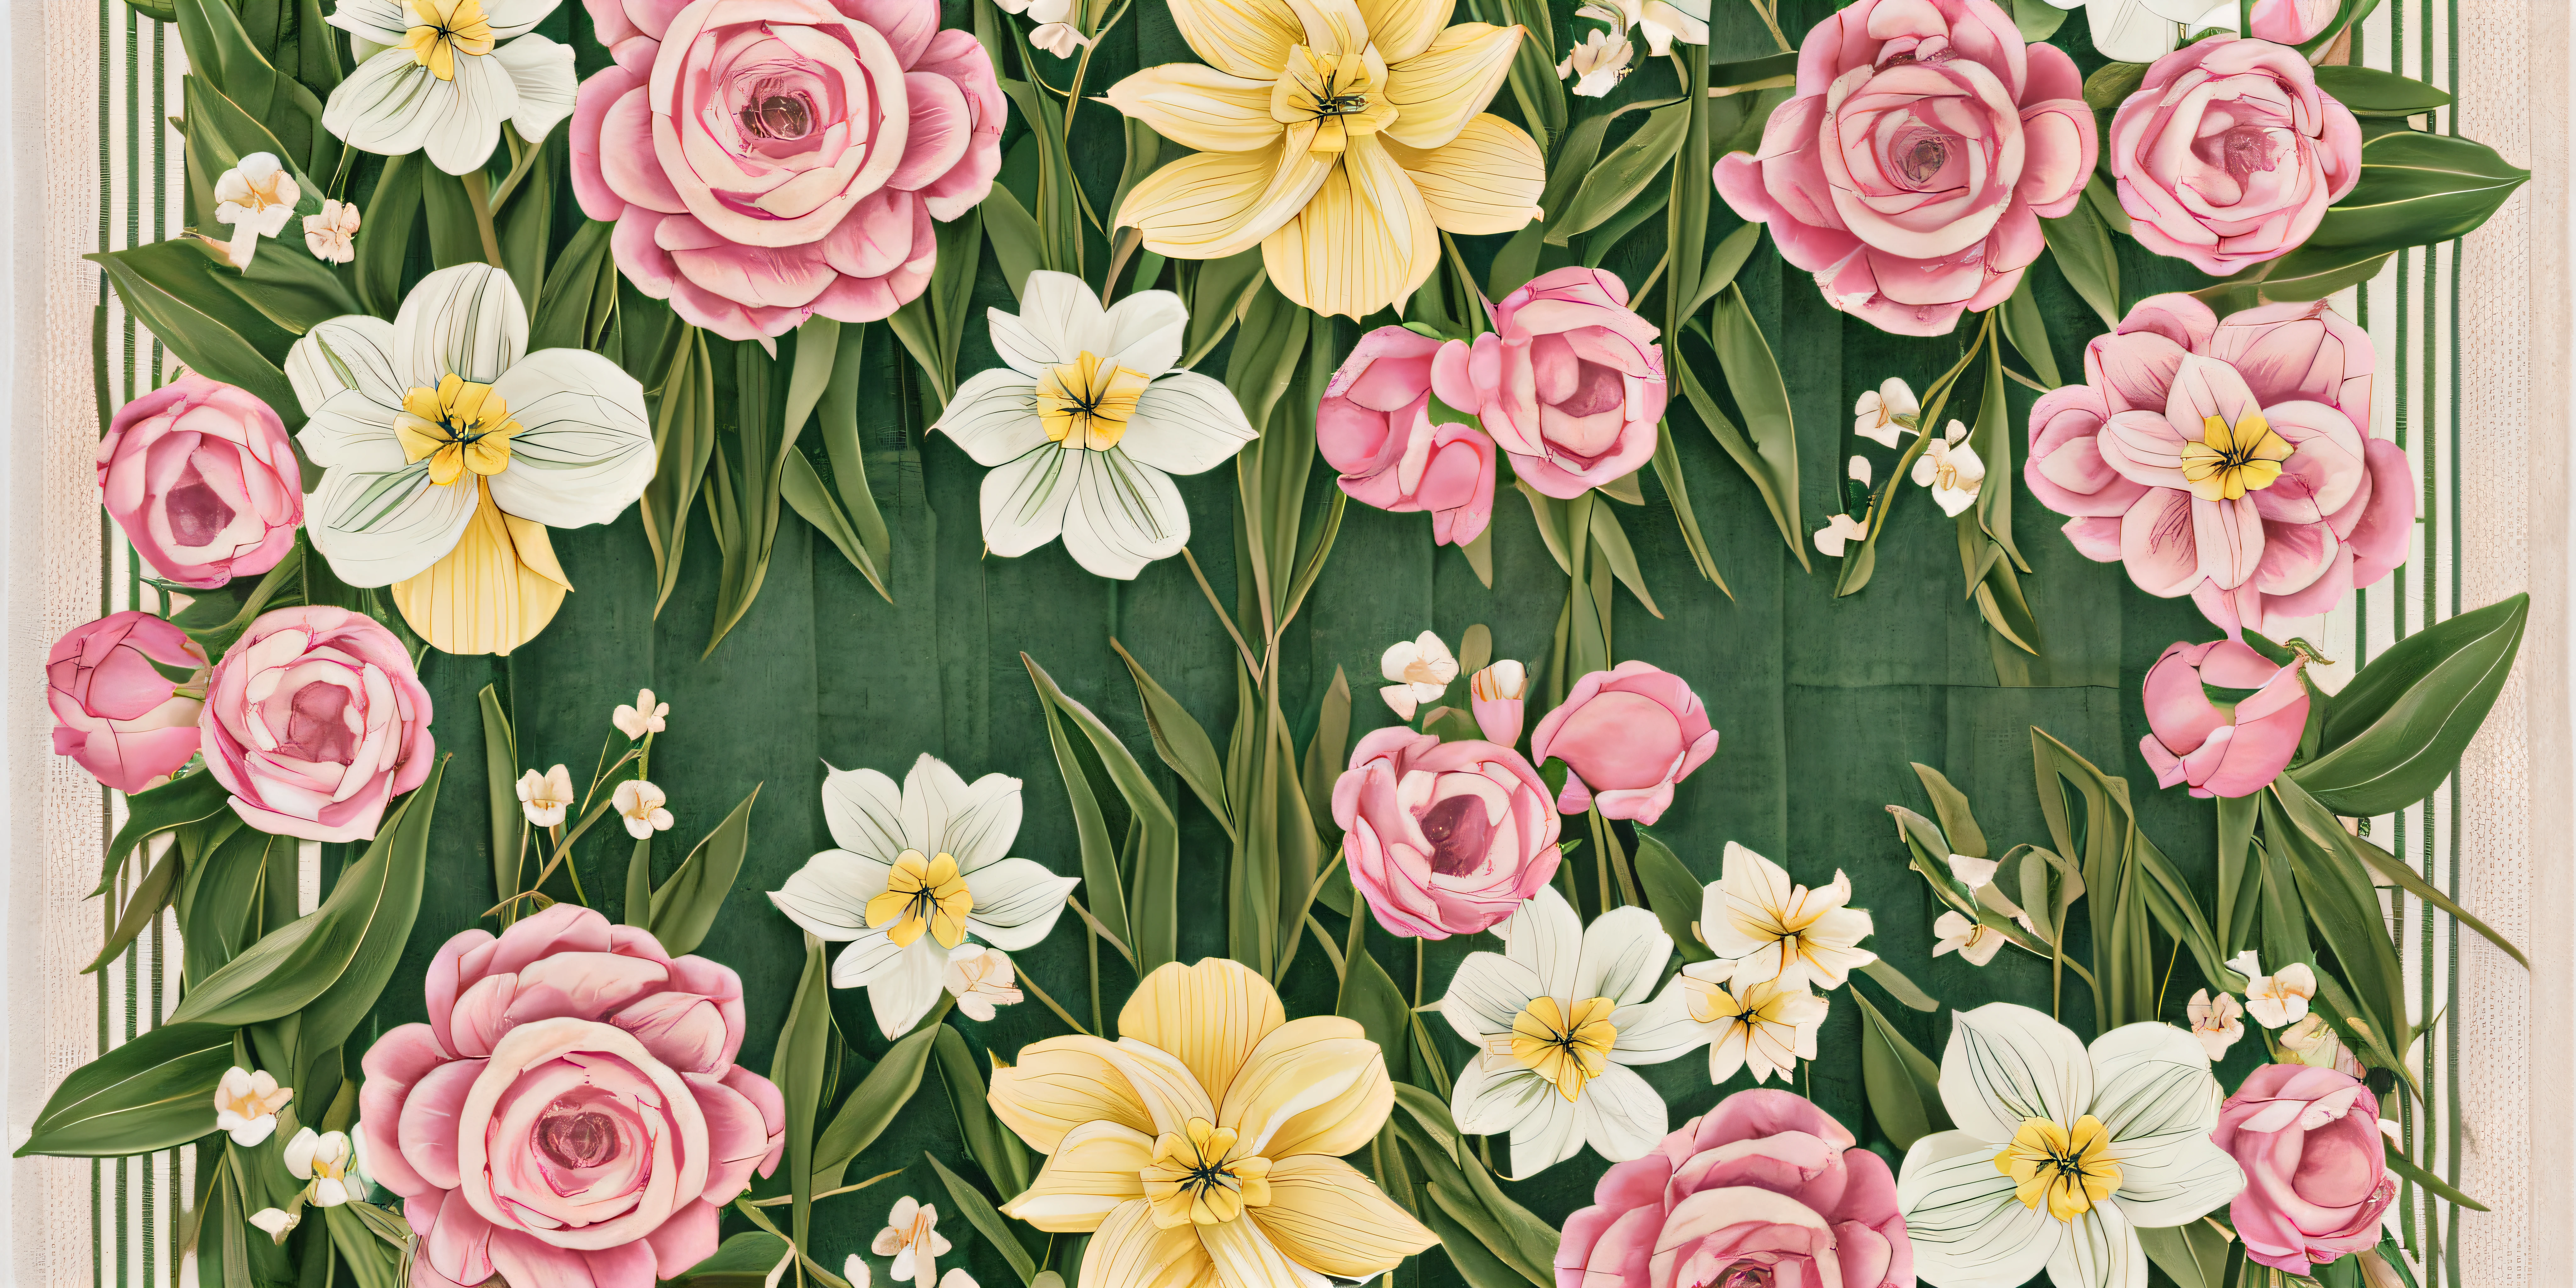 Ilustrar un 16:9 Composición que muestra una barra visualmente impactante compuesta de rosas y tulipanes, hydrangeas, y narcisos, colocado horizontalmente para parecerse a una banda adornada en una toalla de felpa --auto --s2